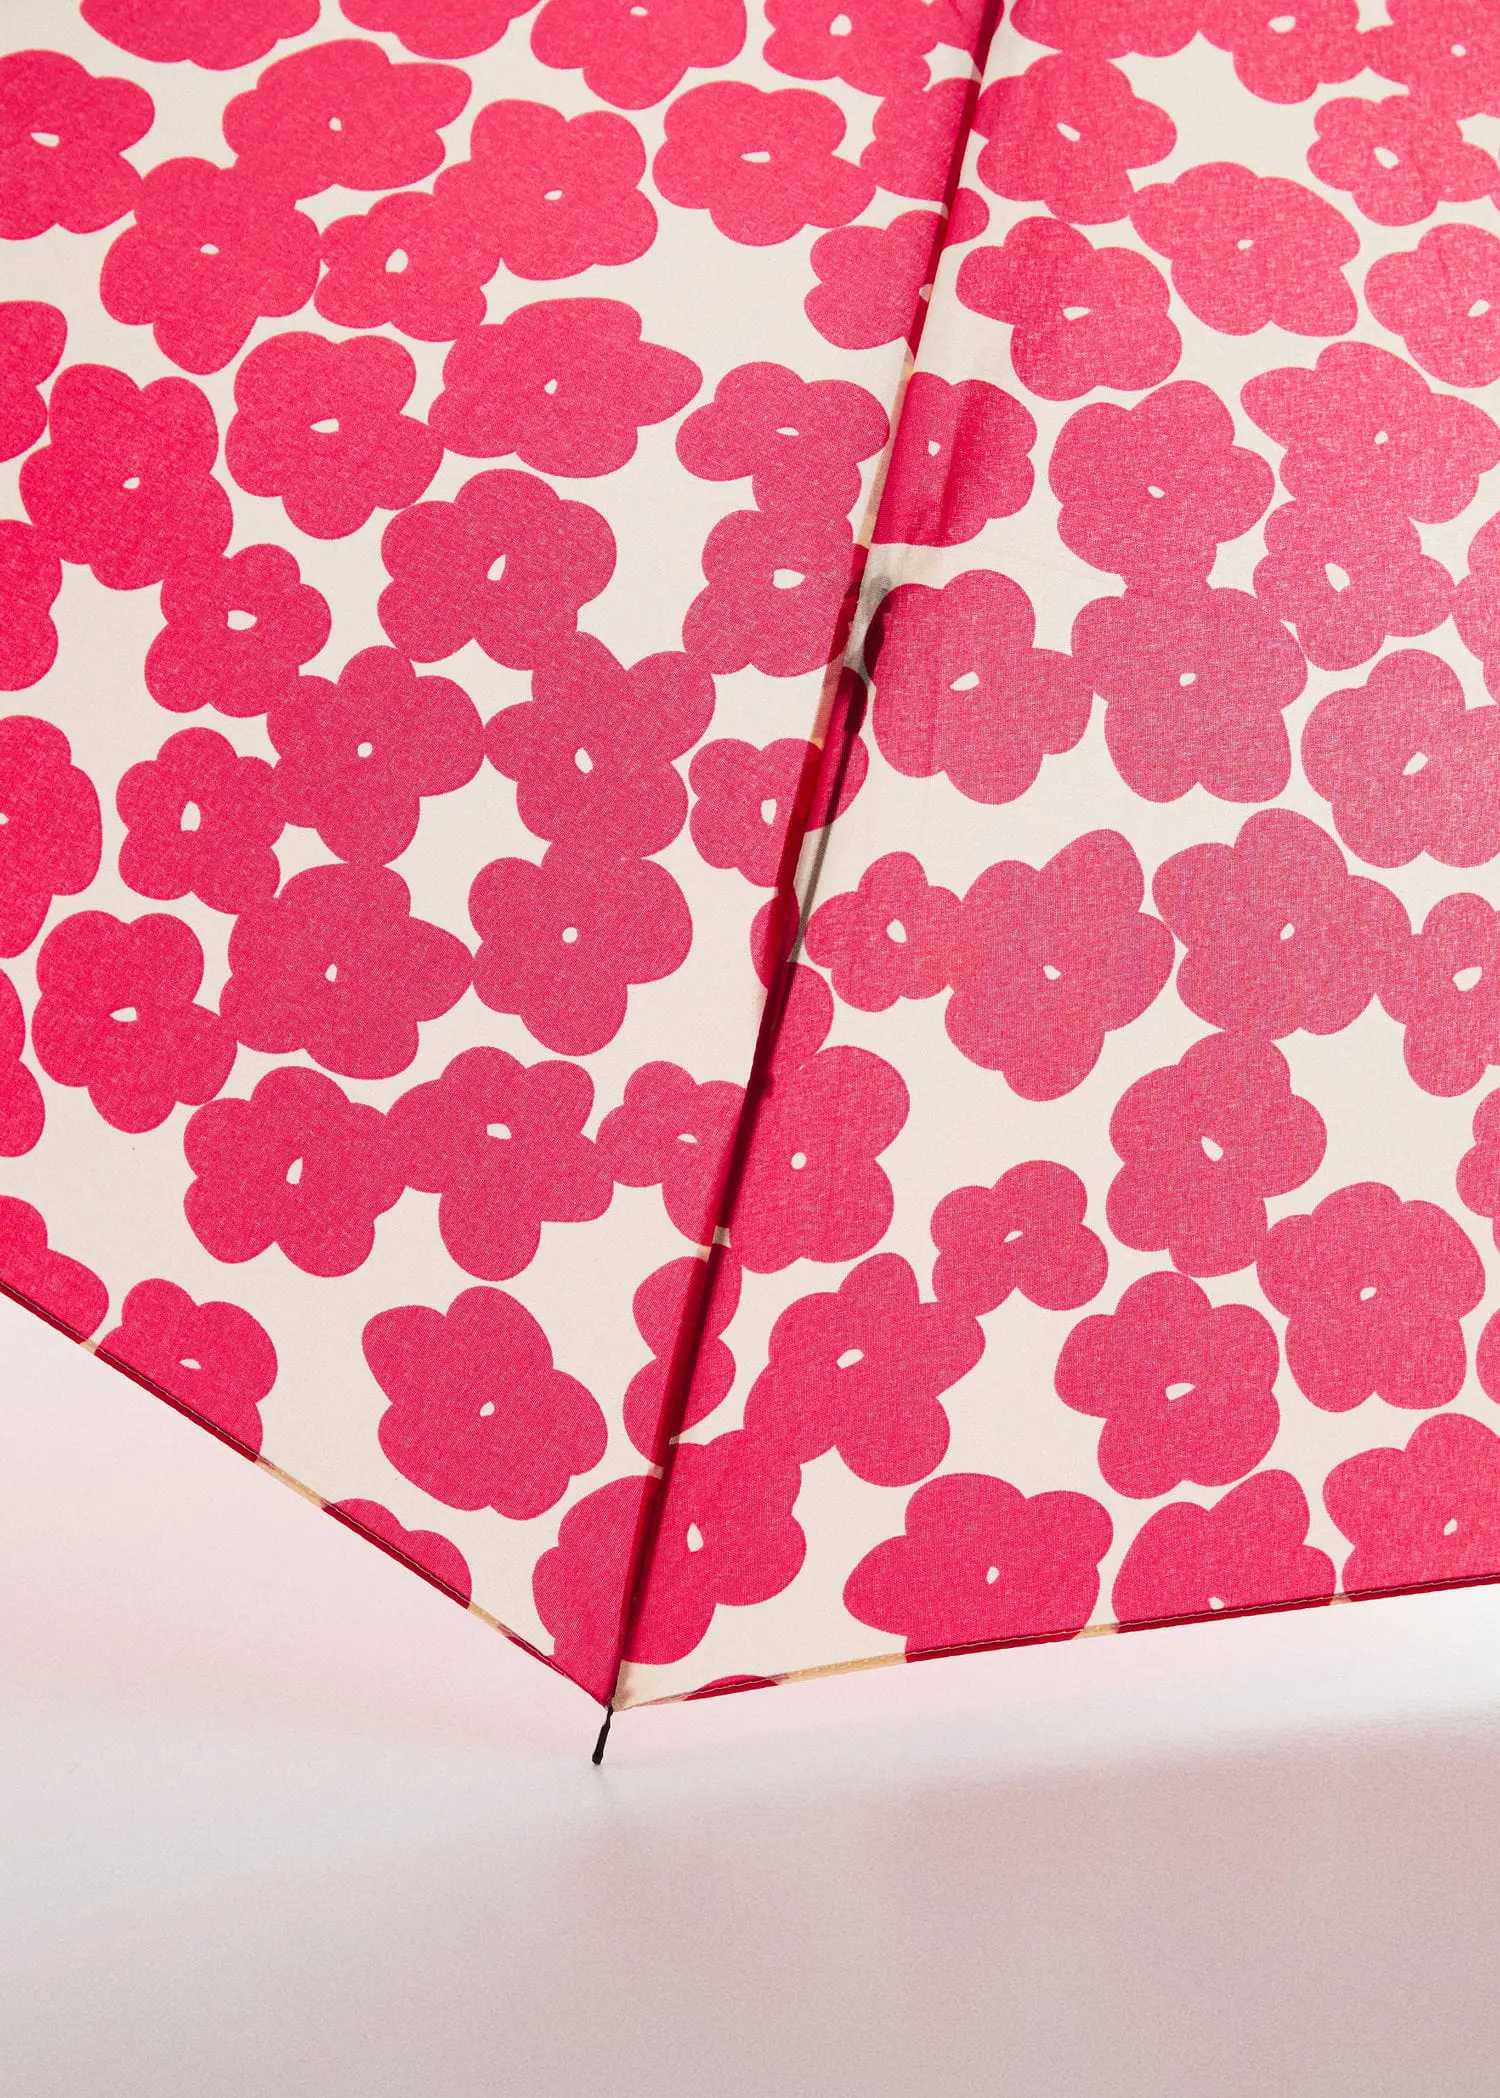 Mango Floral folding umbrella. a close-up view of a pink floral umbrella. 